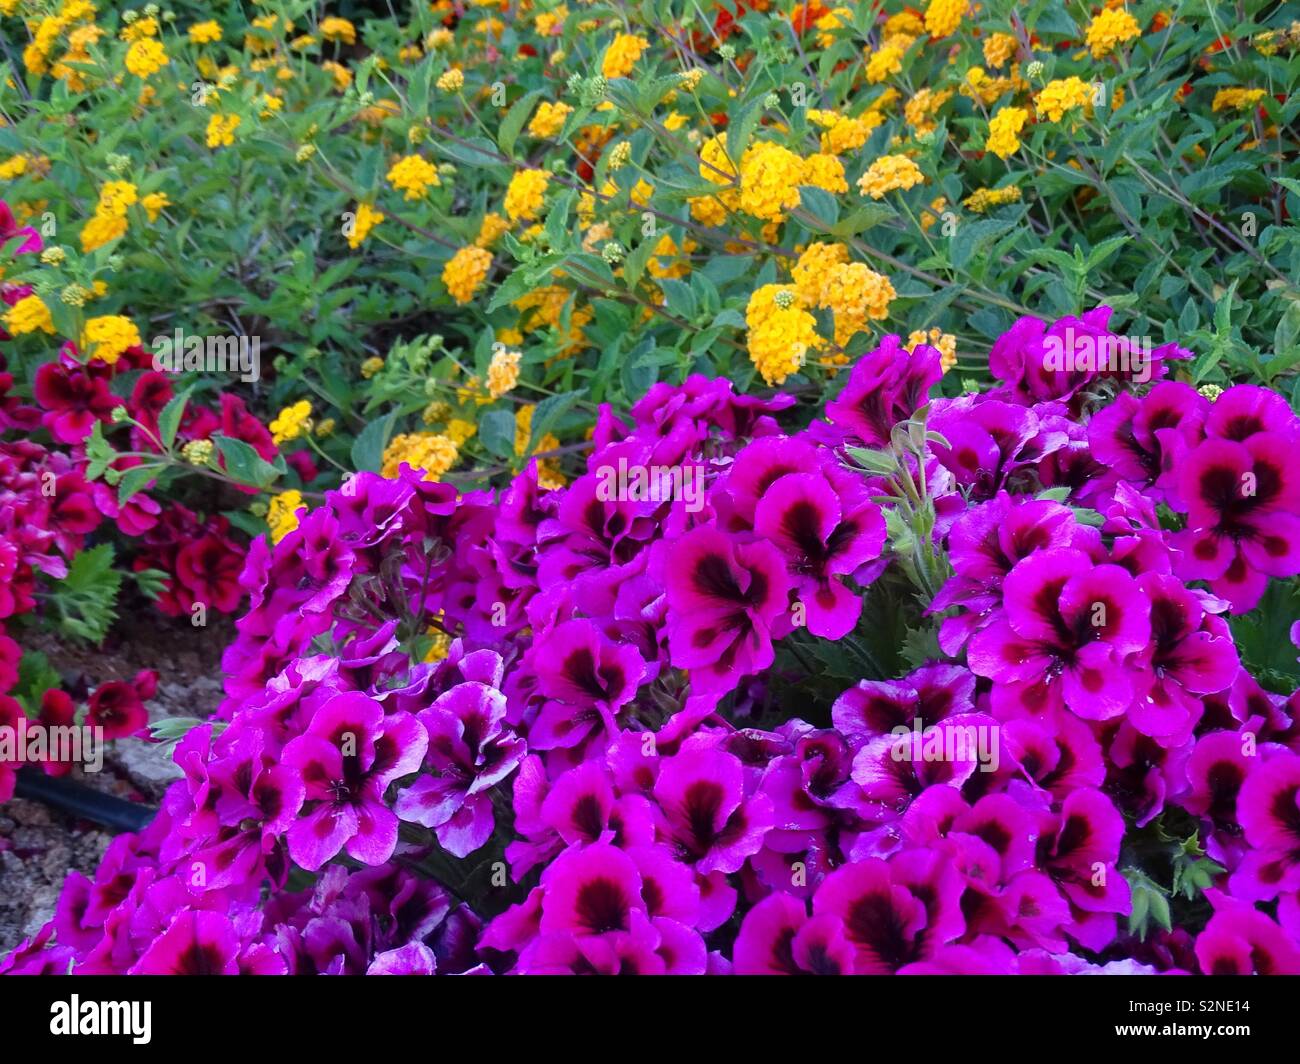 Purple pelargonium flowers in Spain Stock Photo